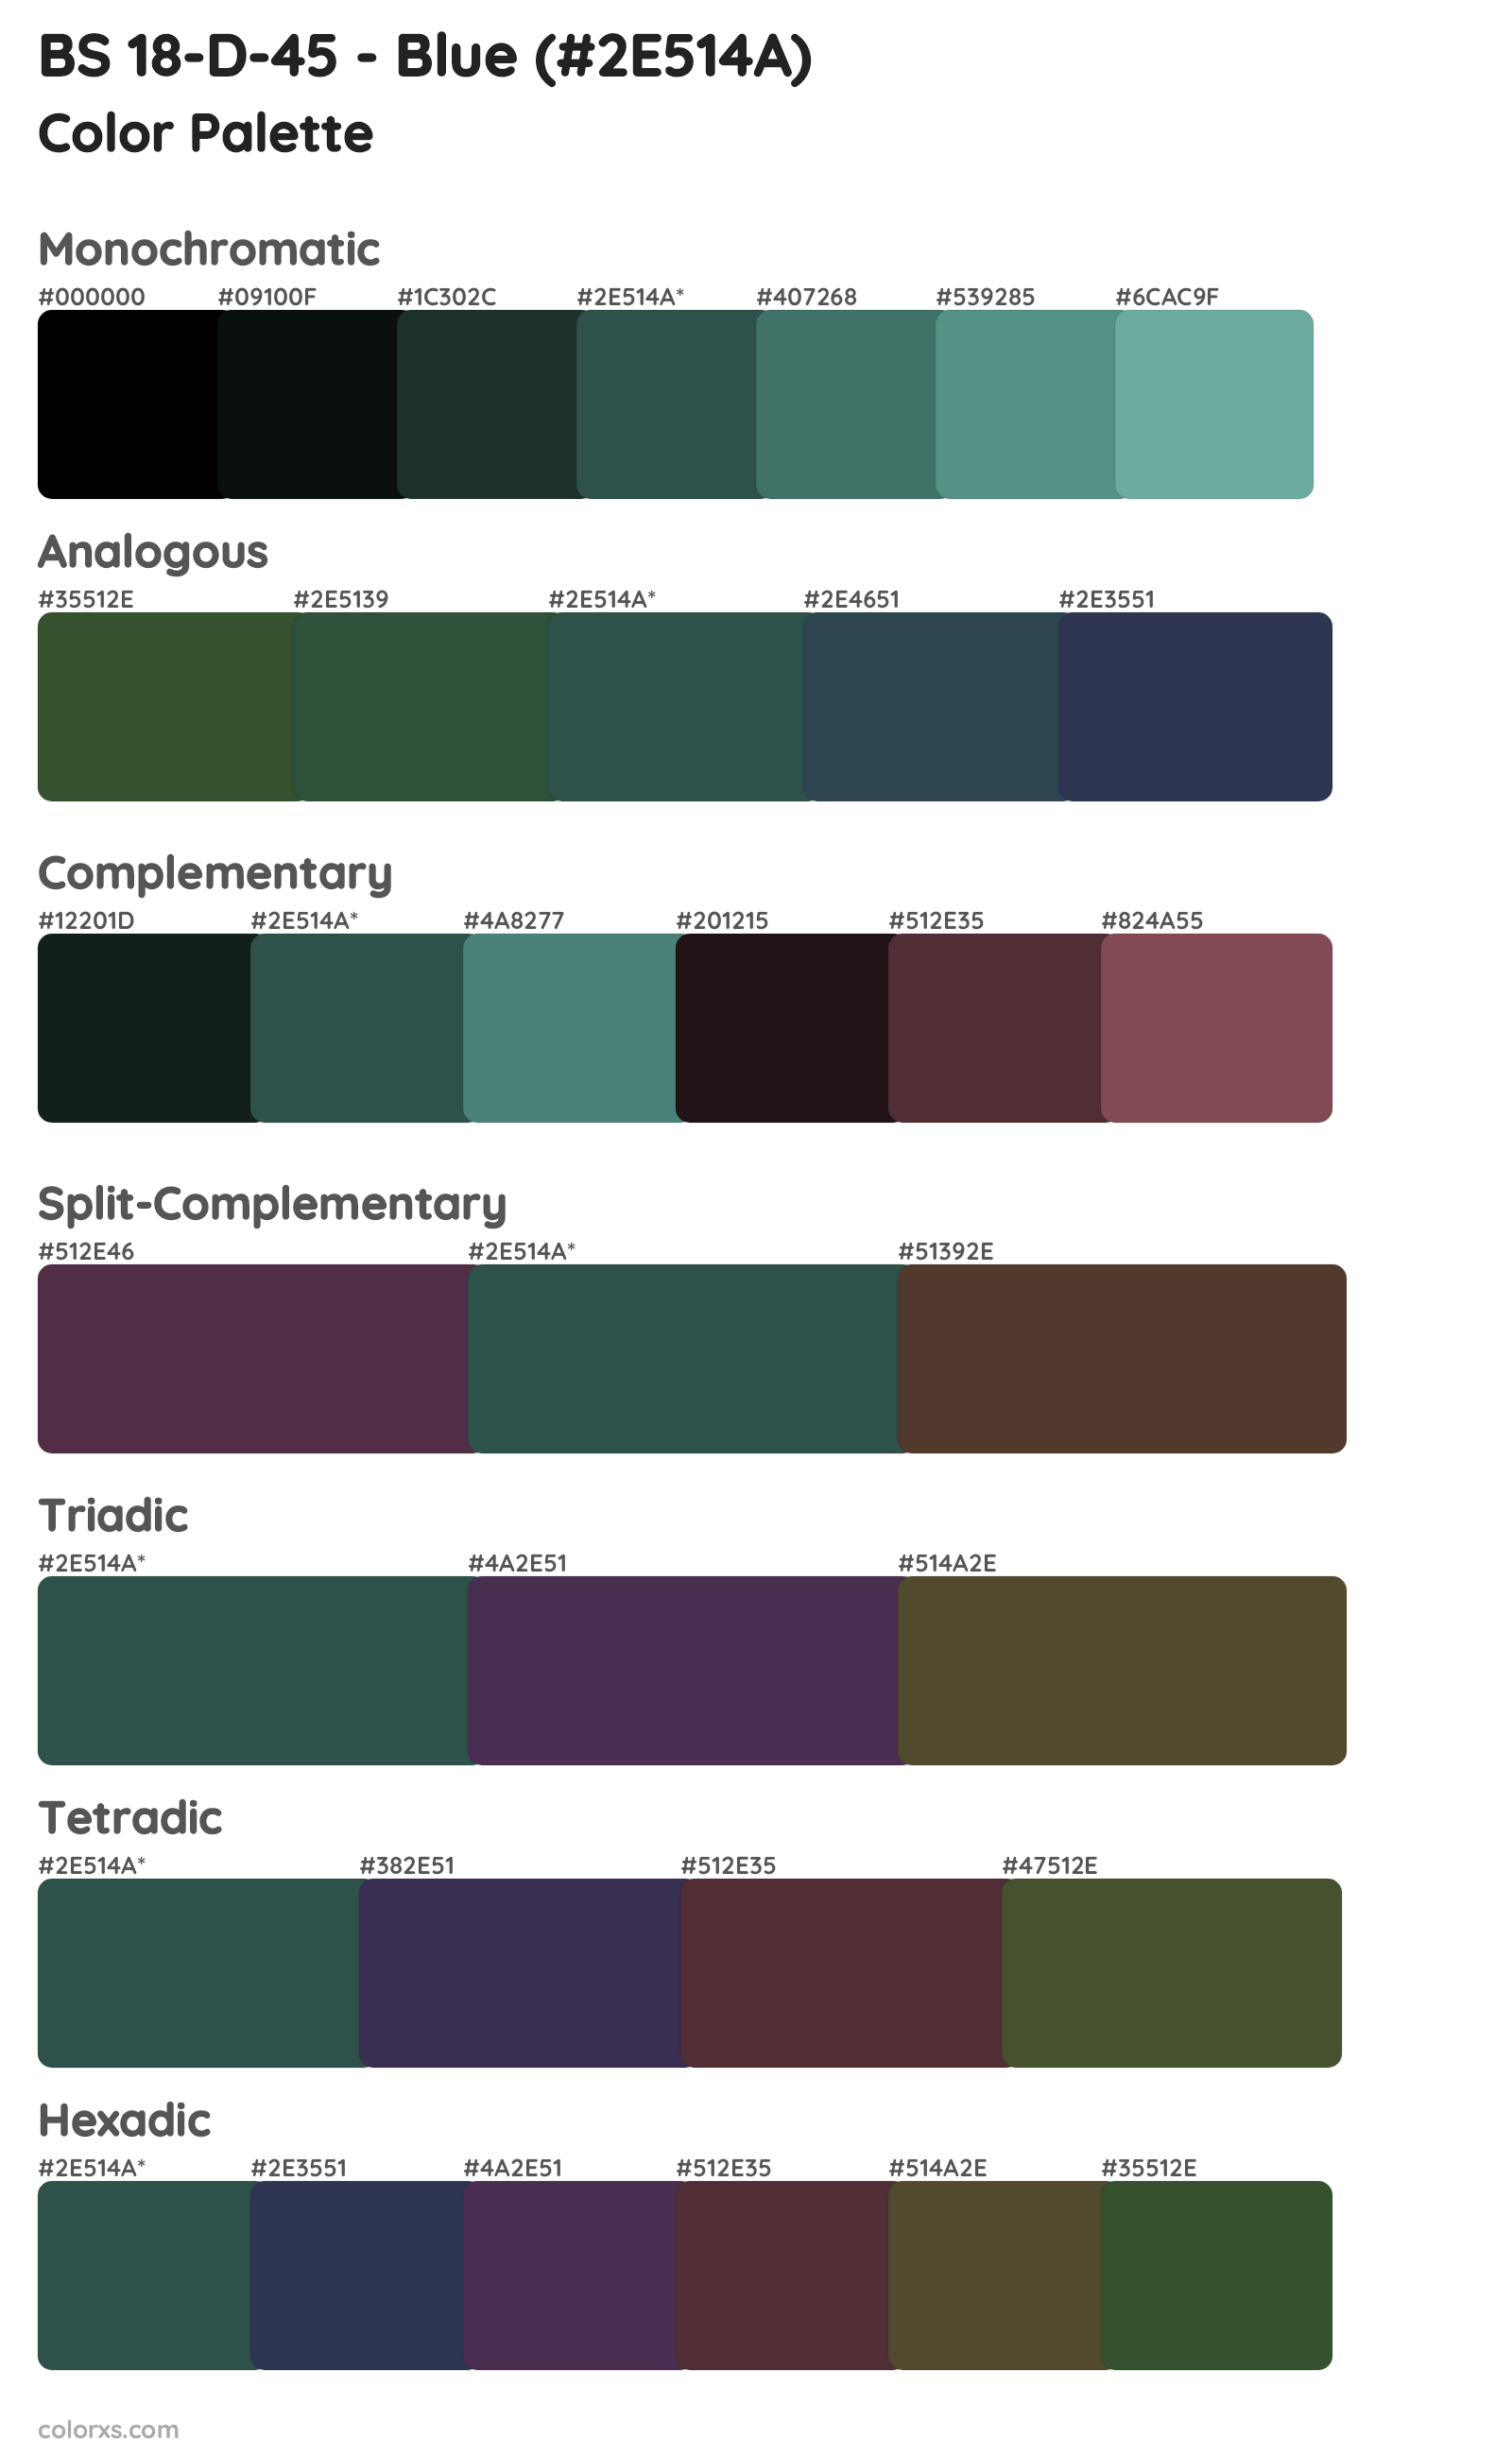 BS 18-D-45 - Blue Color Scheme Palettes